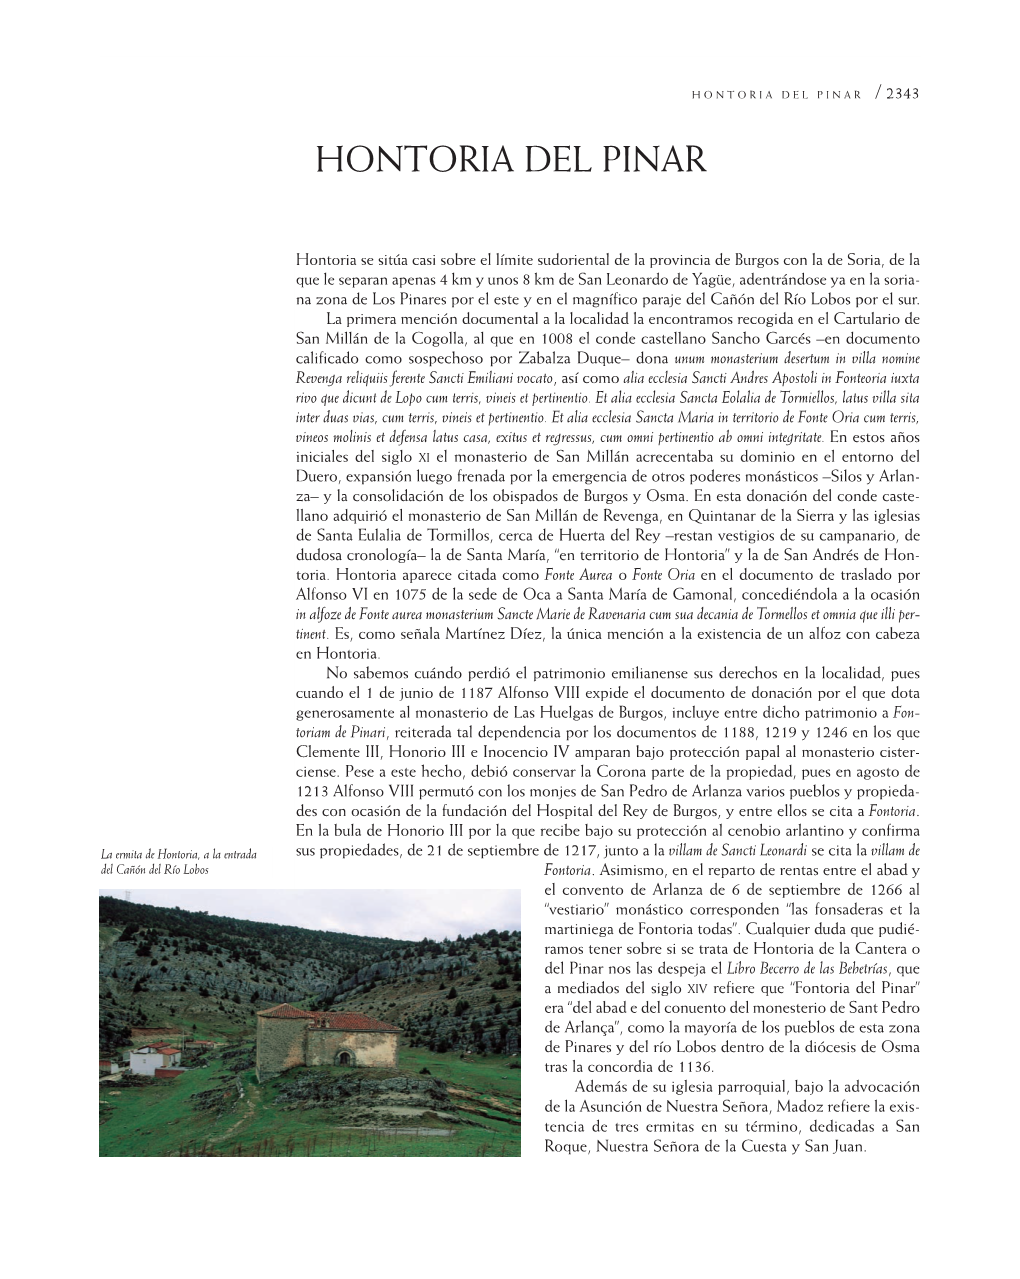 Hontoria Del Pinar 5/10/09 09:34 Página 2343